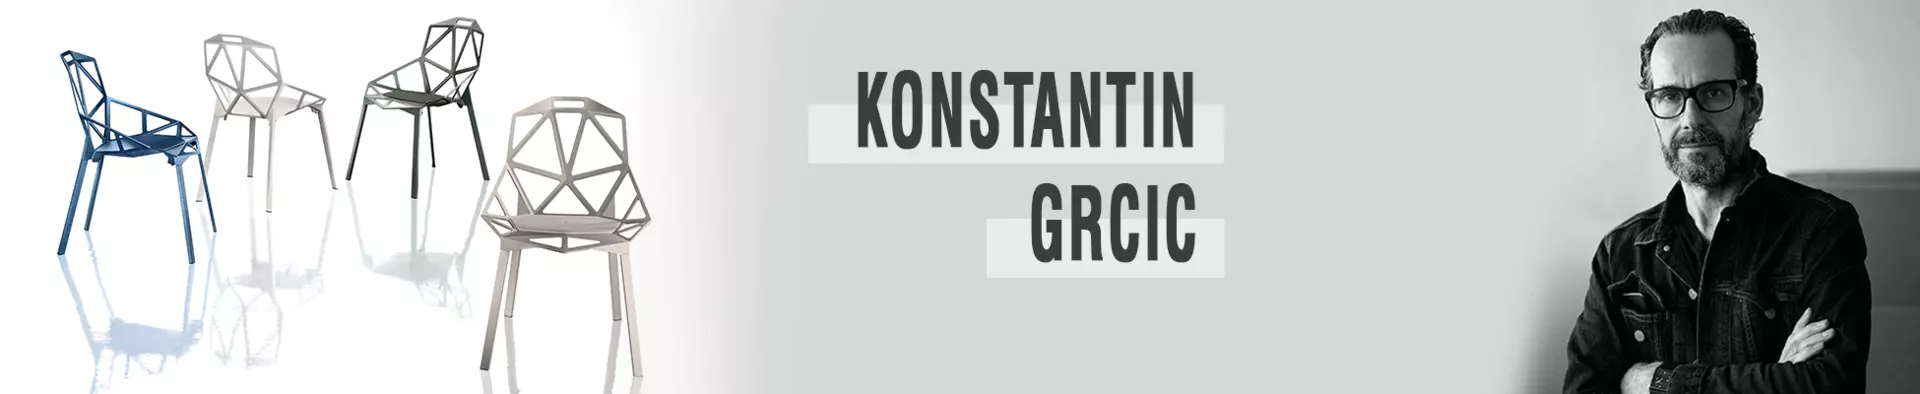 Konstantin Grcic - der Ausnahmedesigner im Portrait bei interni by inhofer